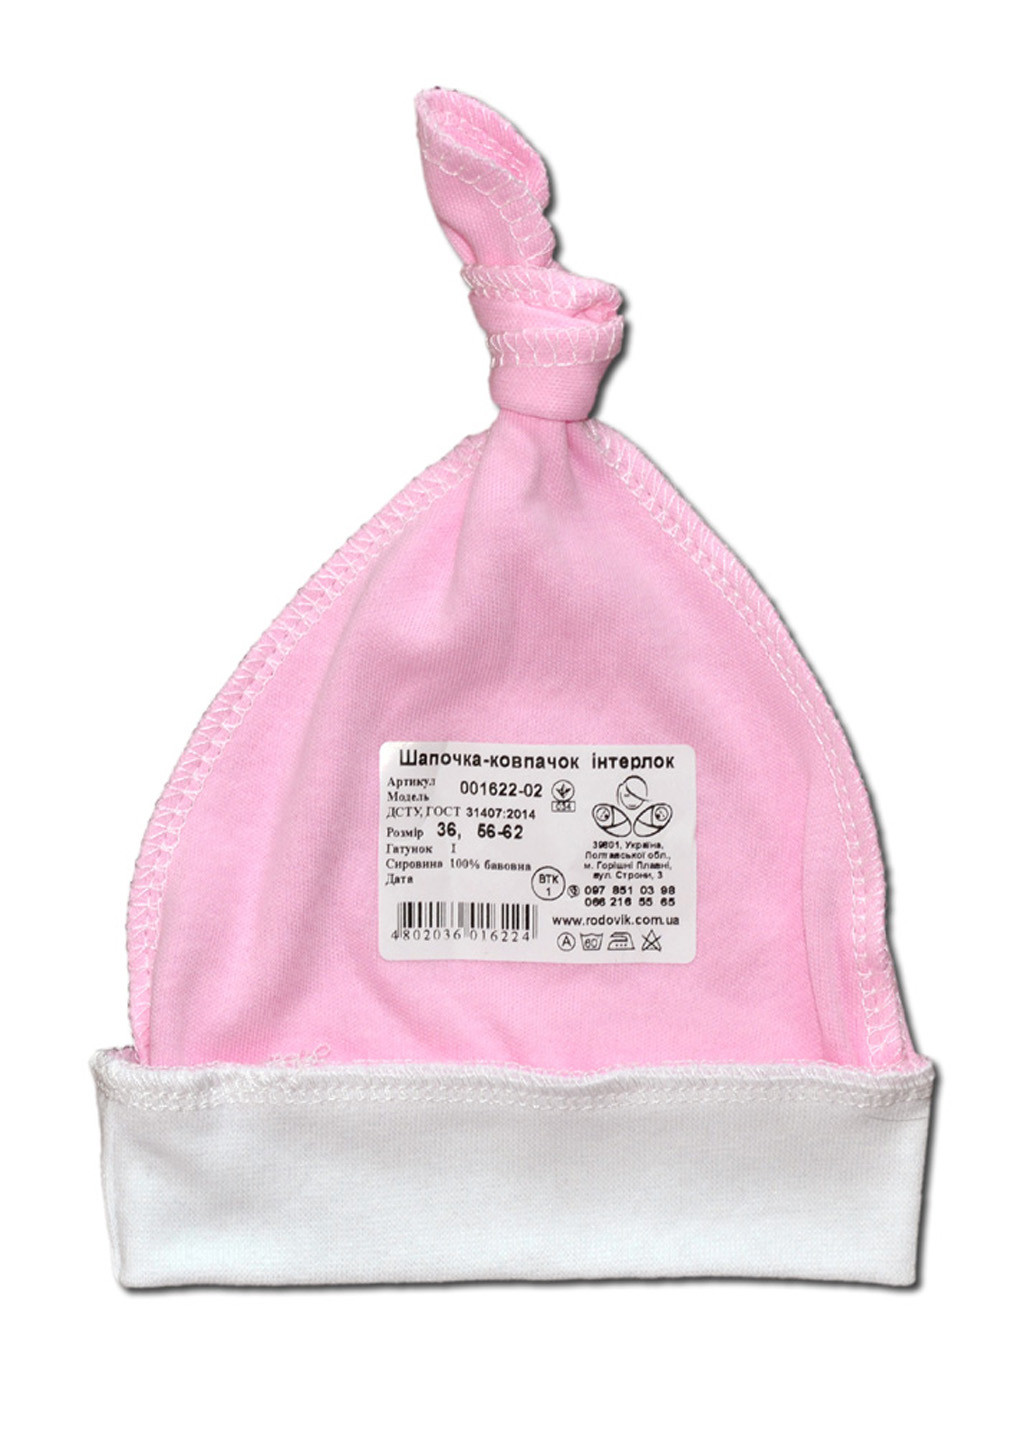 Розовый демисезонный комплект для новорожденных №7 (5 предметов) тм коллекция капитошка розовый Родовик комплект 07-РК